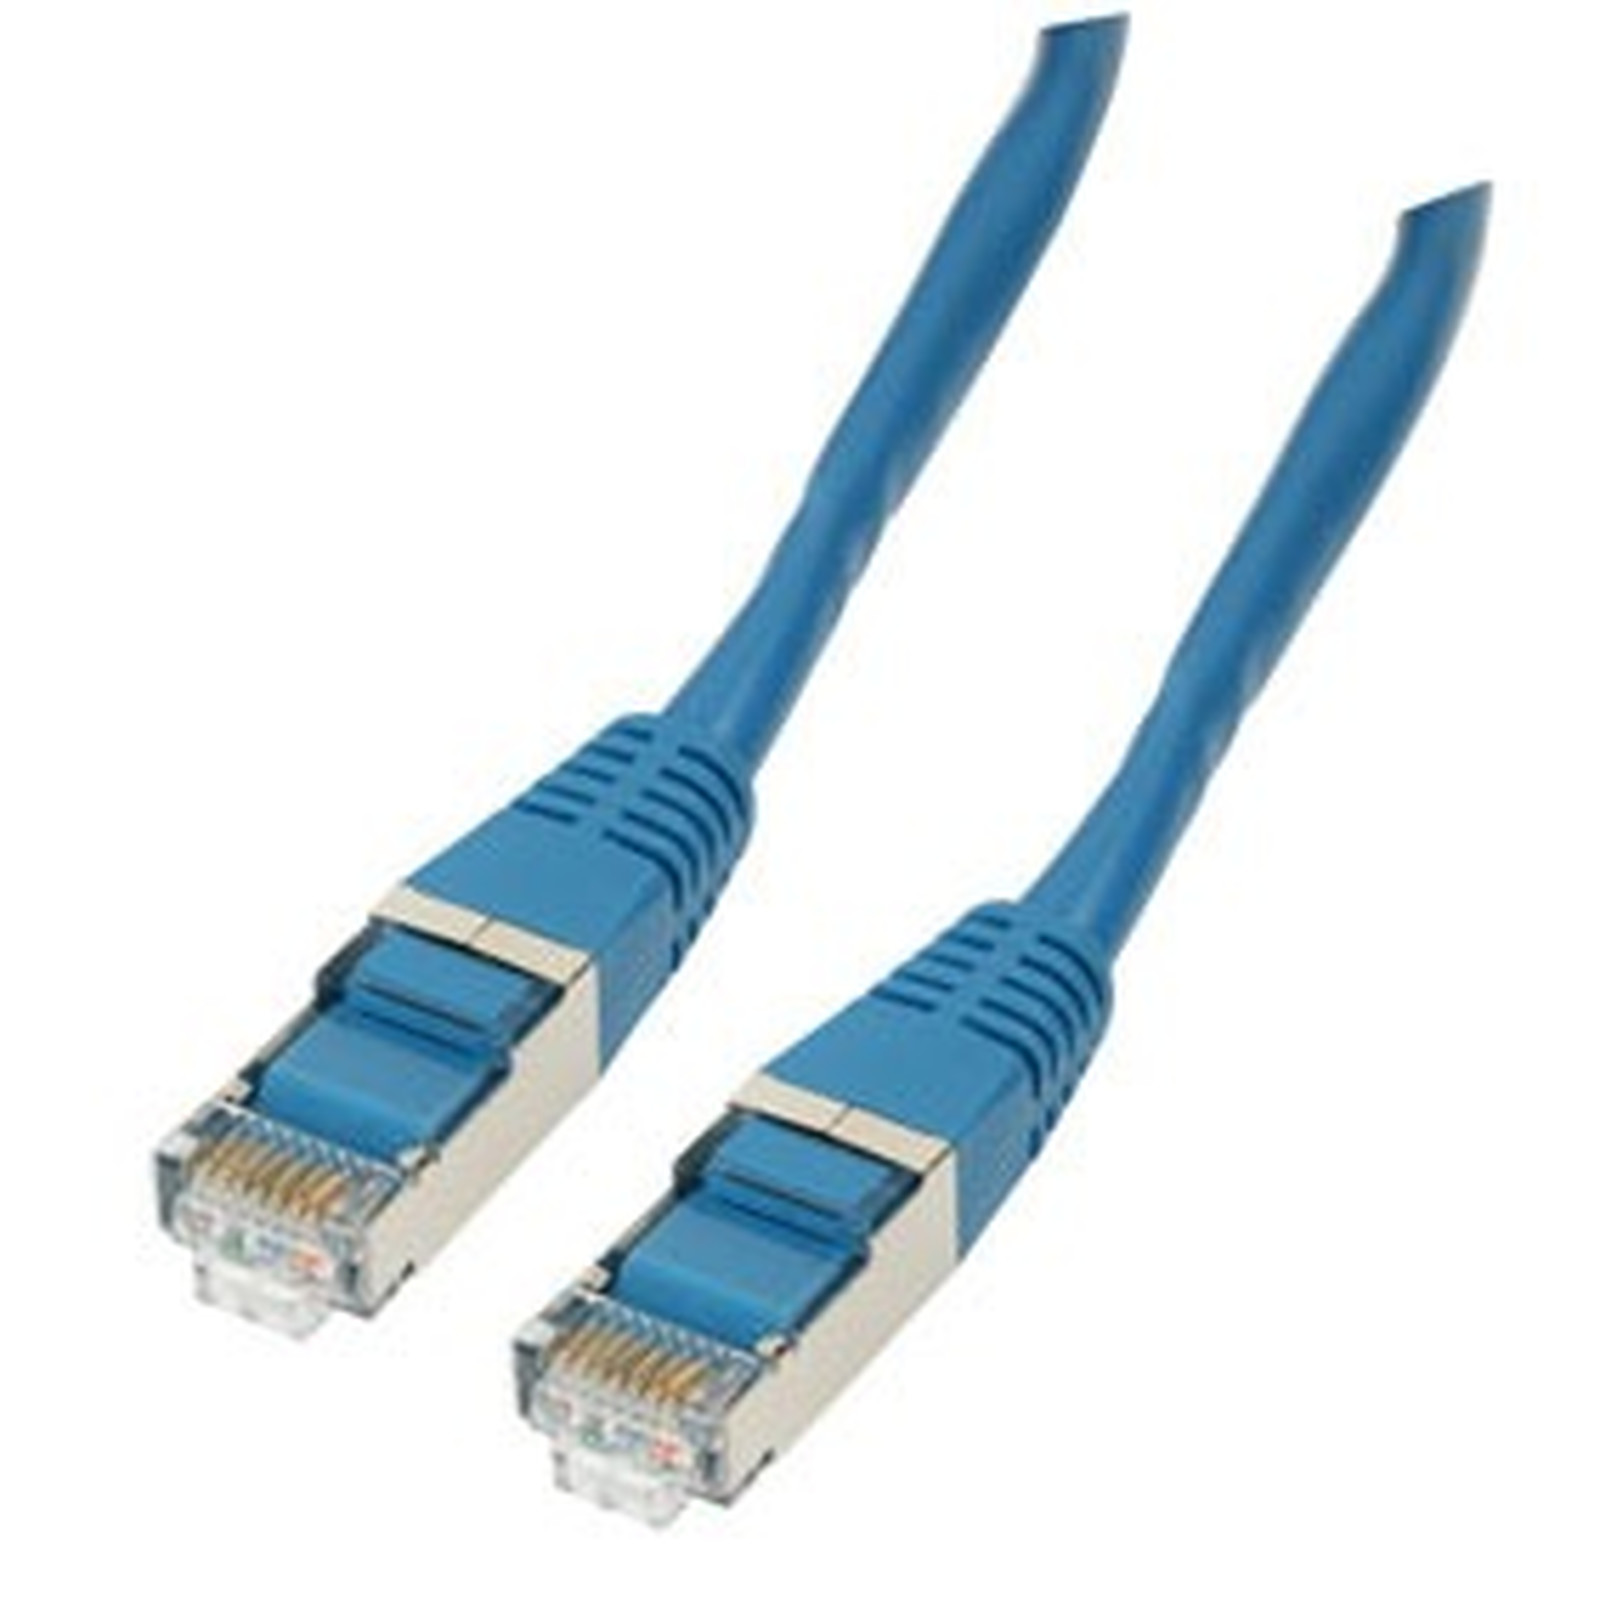 Cable RJ45 categorie 6 F/UTP 10 m (Bleu) - Cable RJ45 Generique